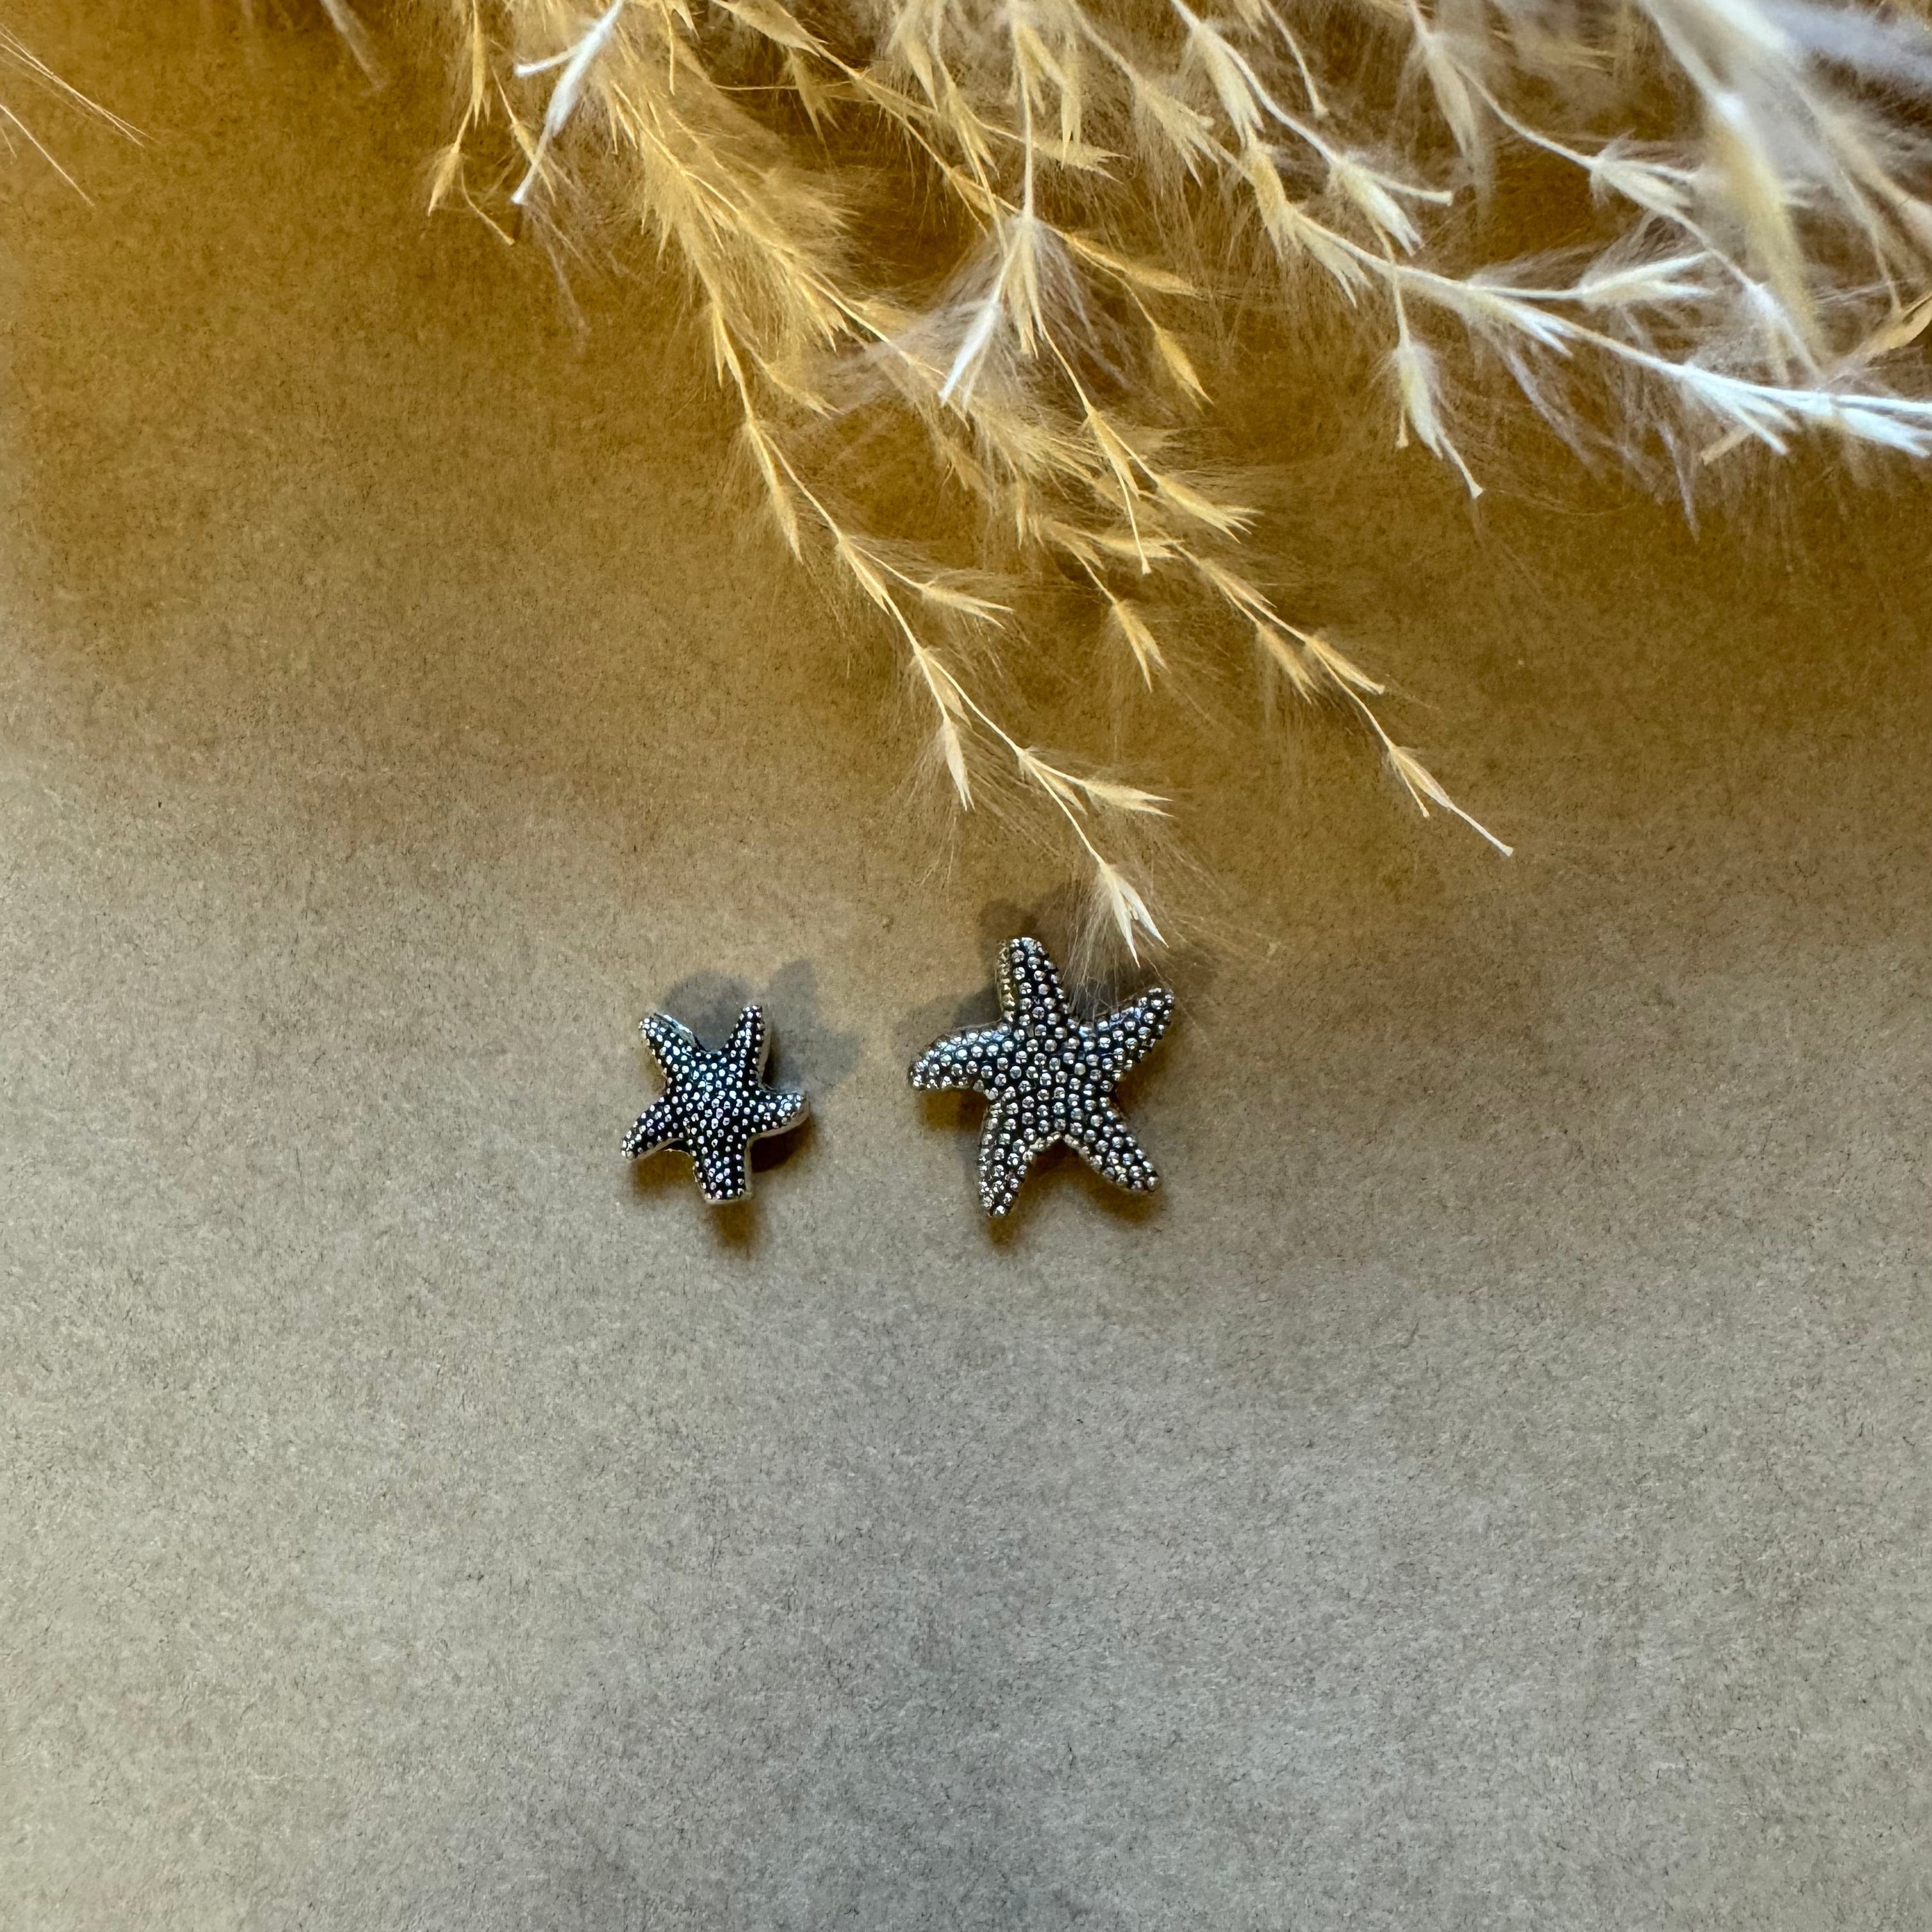 brightstars Versilberter antiker Seestern für DIY Ohrring Armband Halskette Schmuckherstellung - zwei Größen